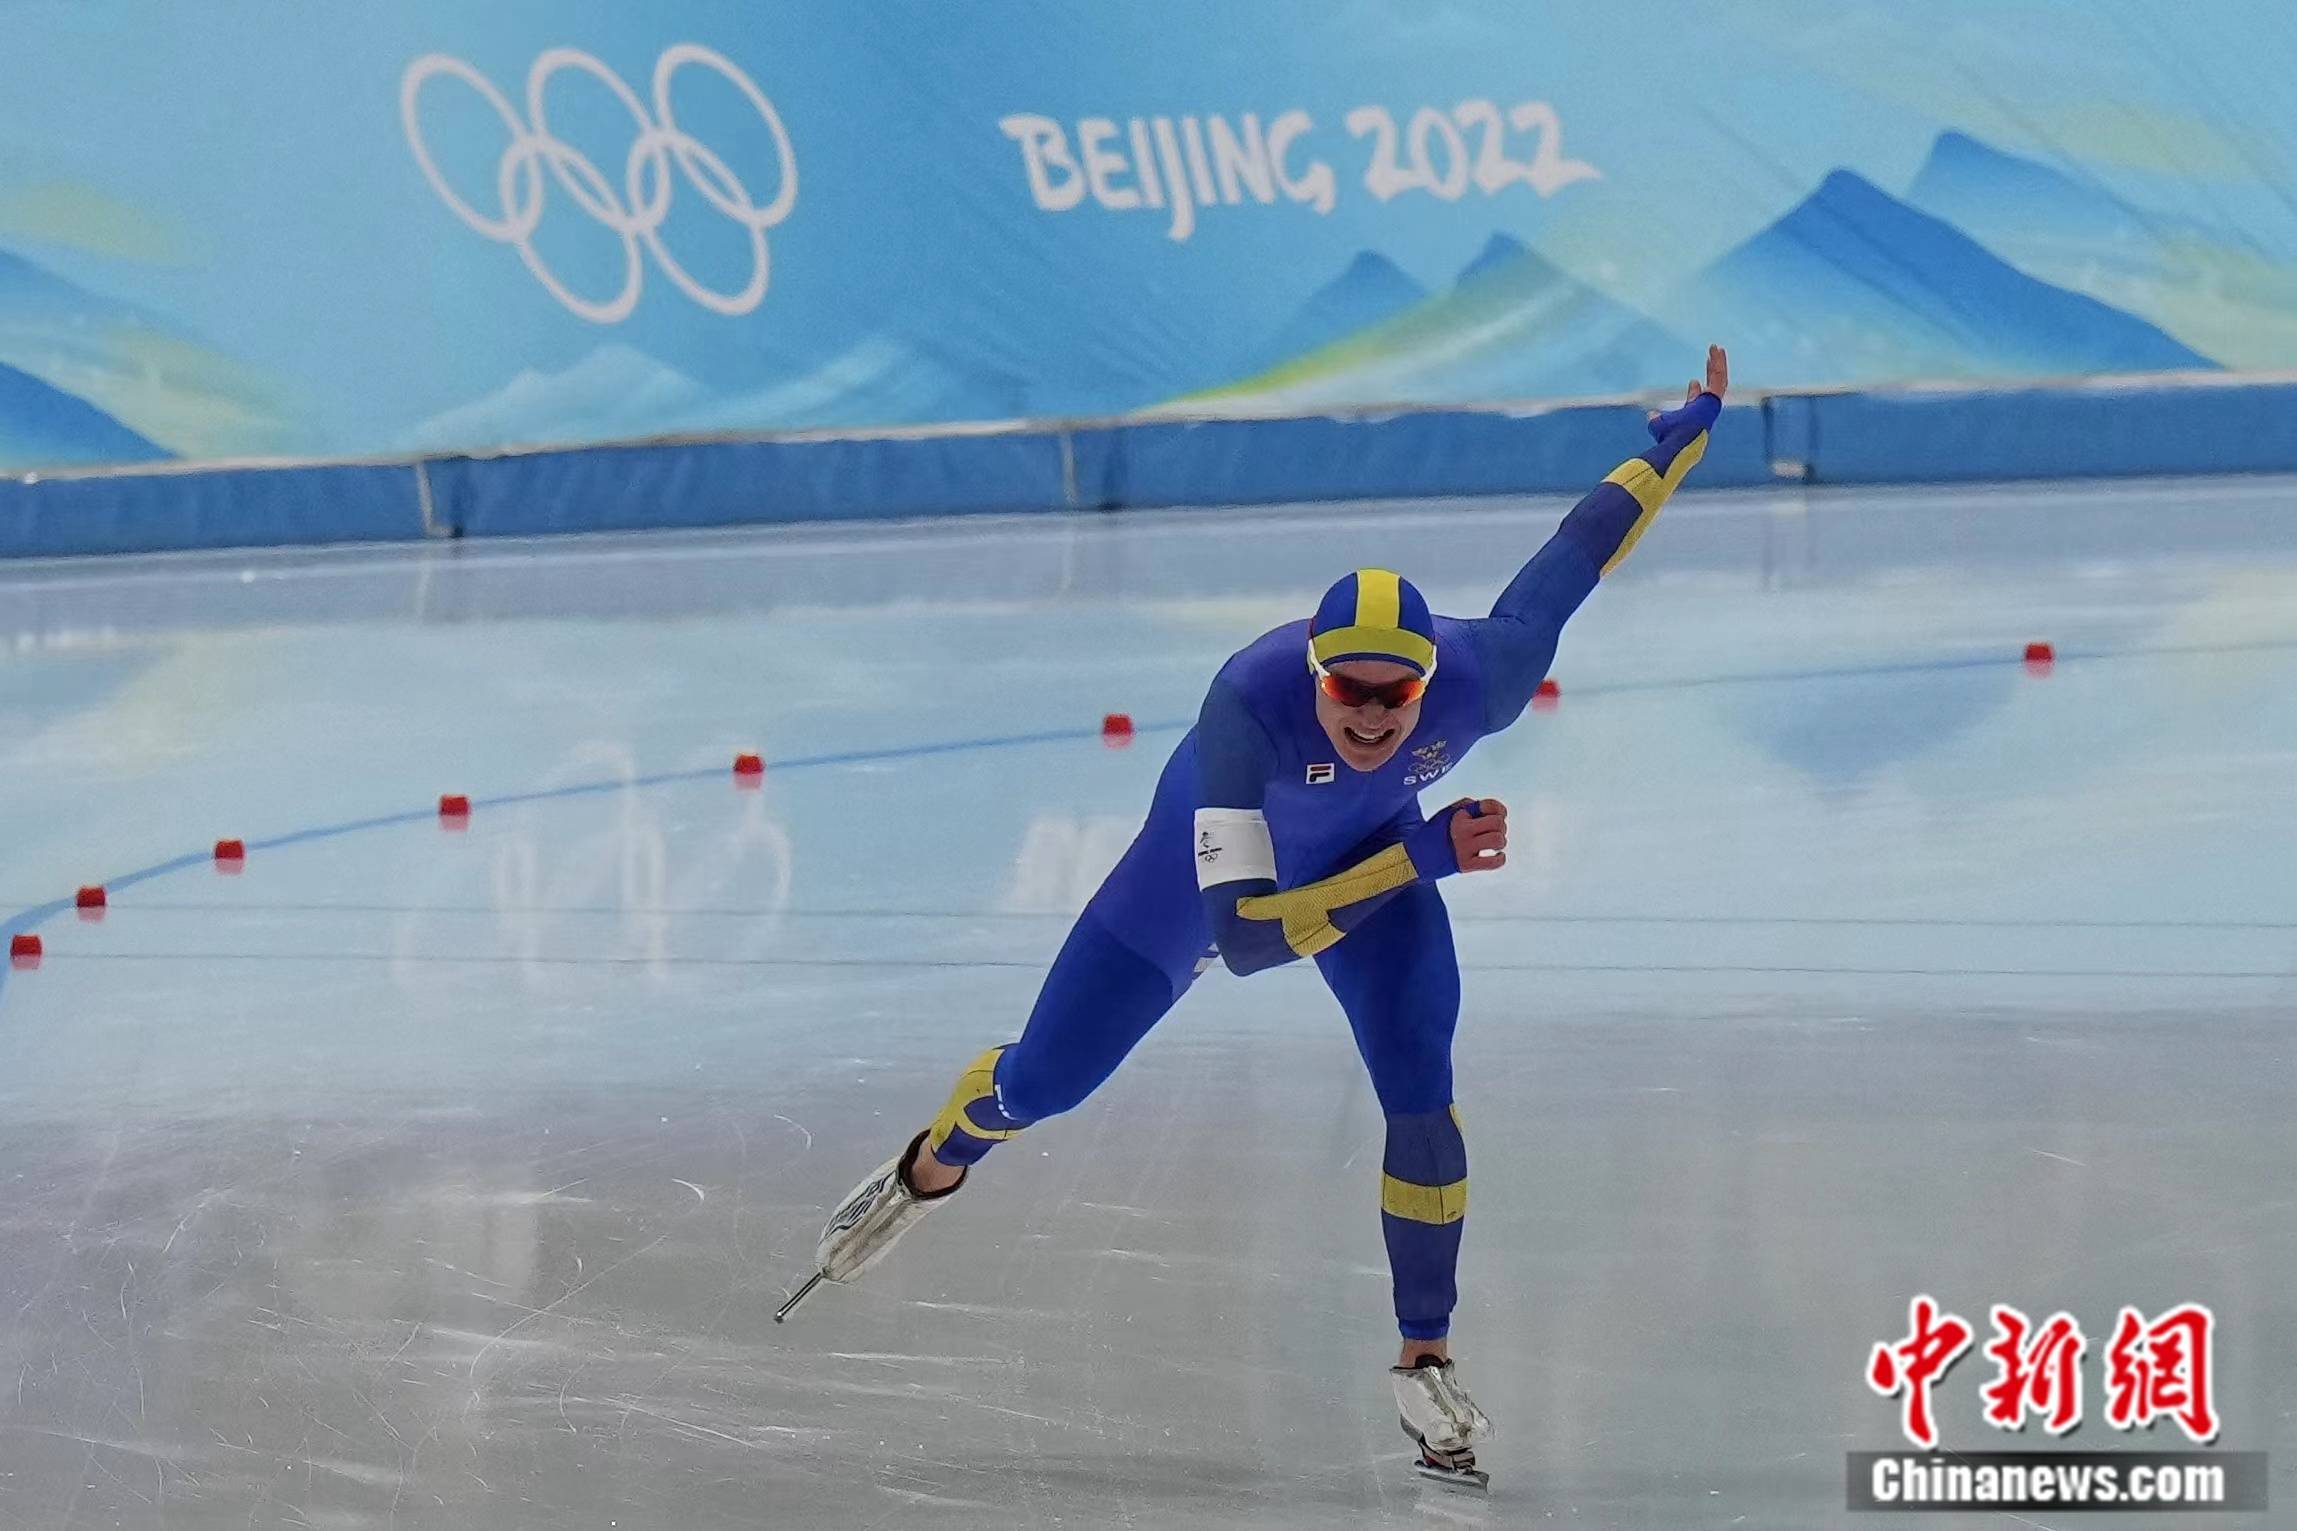 新星|“最快的冰”见证速滑5000米新王诞生 瑞典新星破奥运纪录夺冠